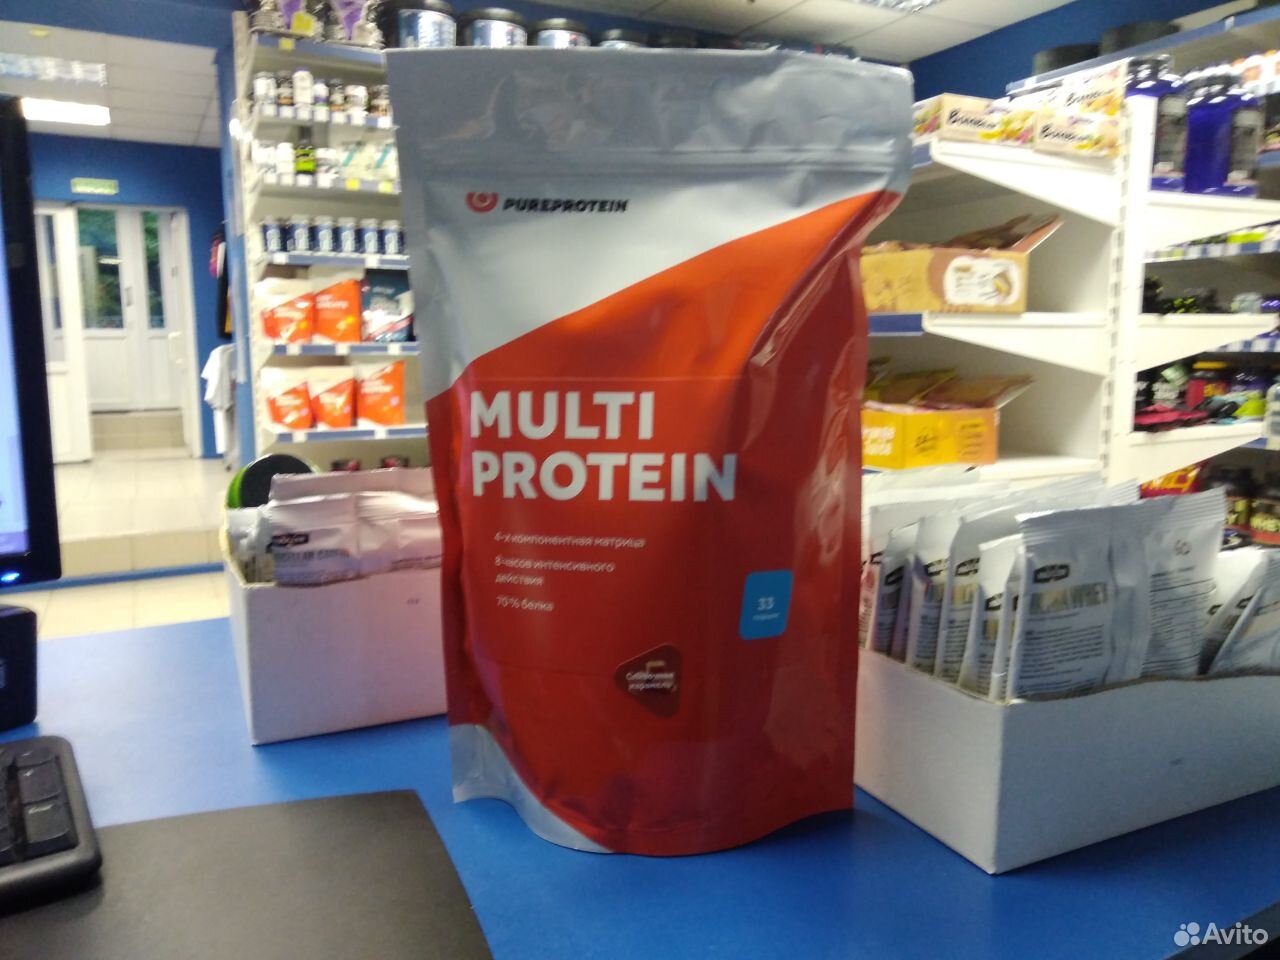 PureProtein, Multi Protein, 1000гр 89044961000 купить 1